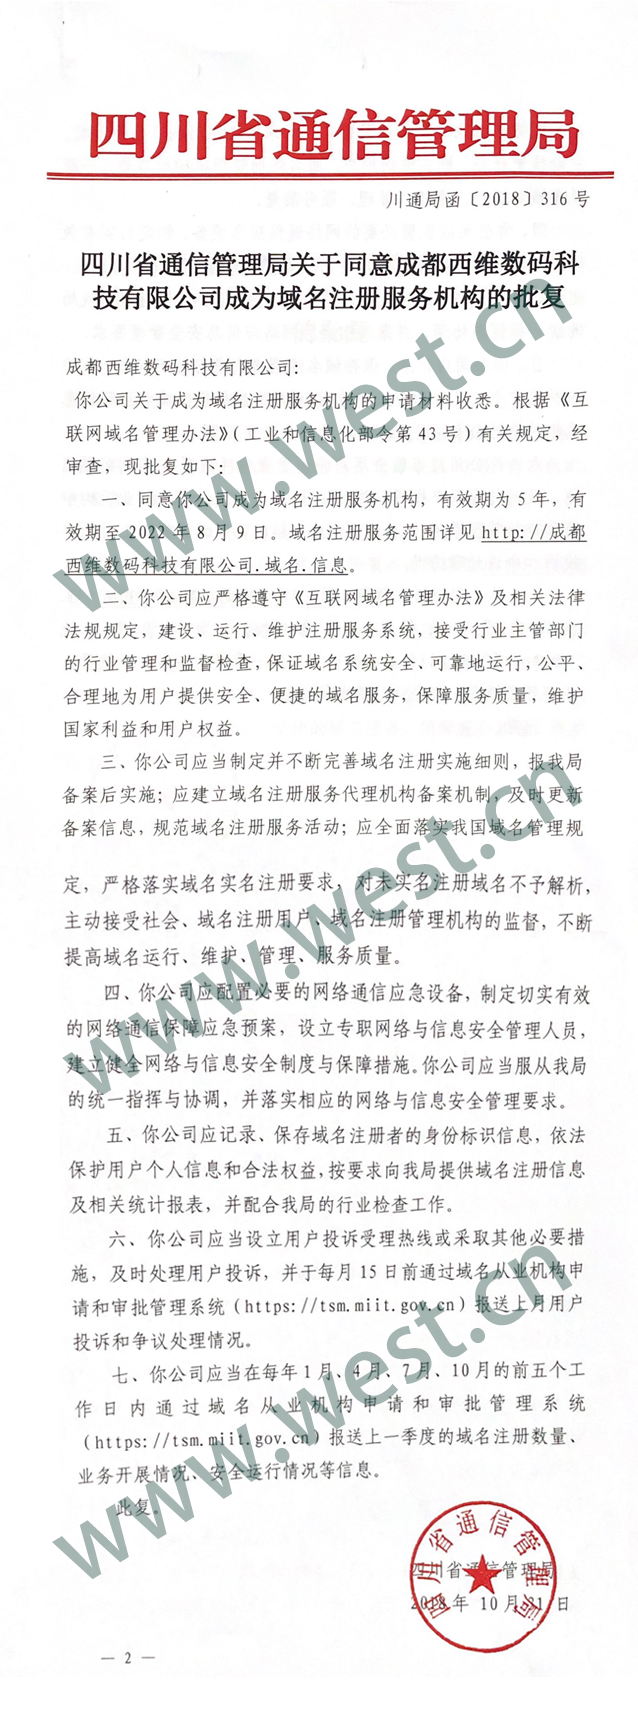 四川省通信管理局颁发的西部数码域名注册服务机构批文